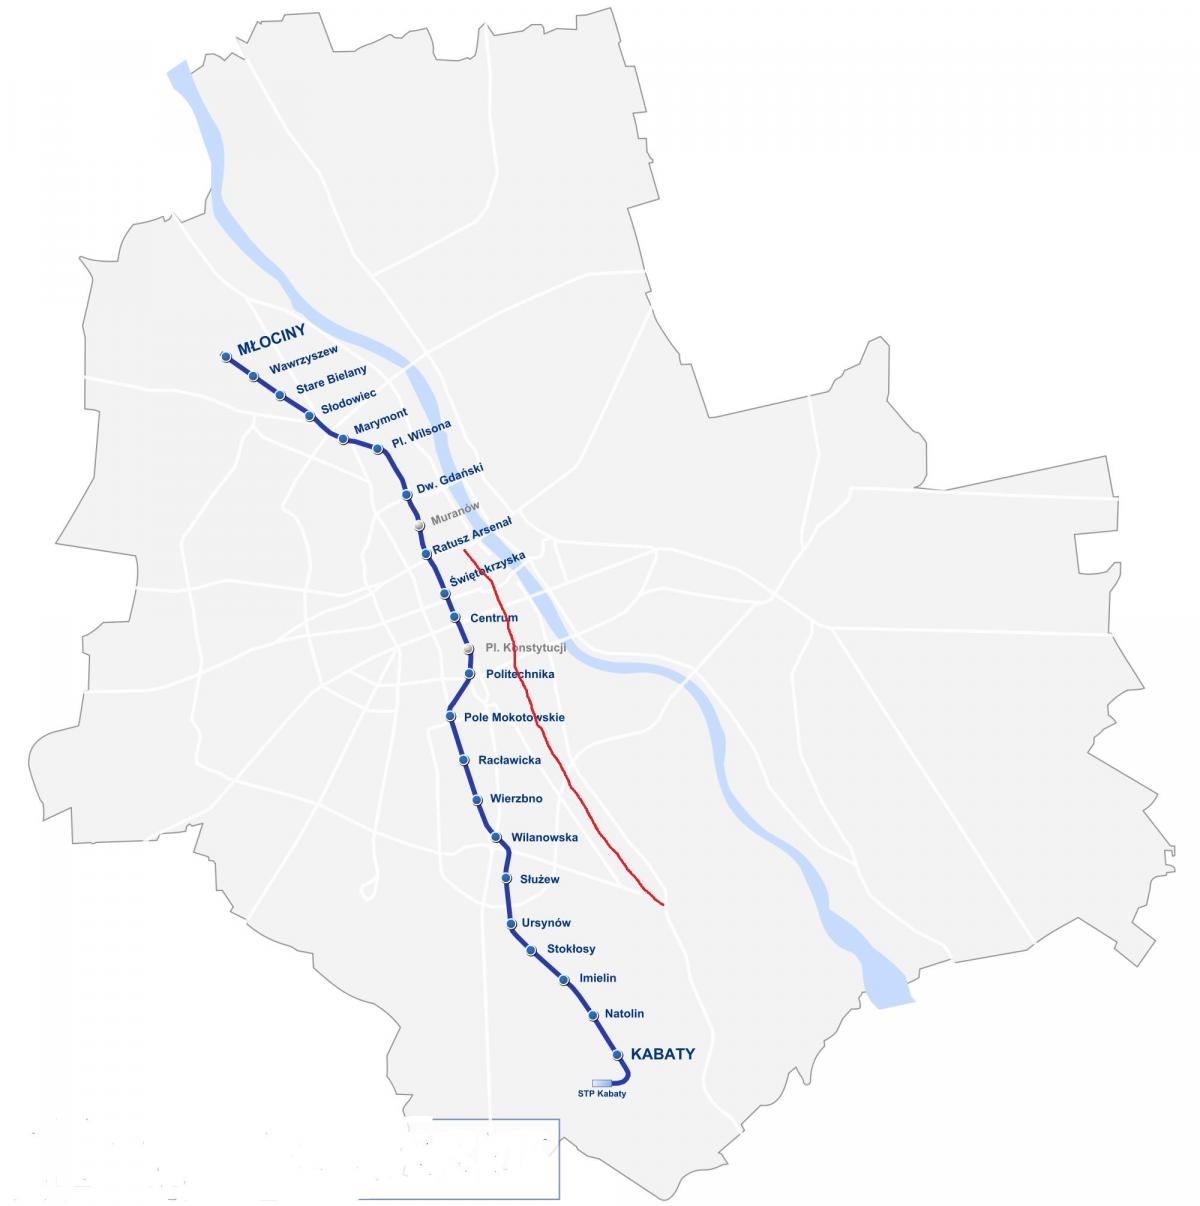 Mapa de Varsòvia ruta reial 